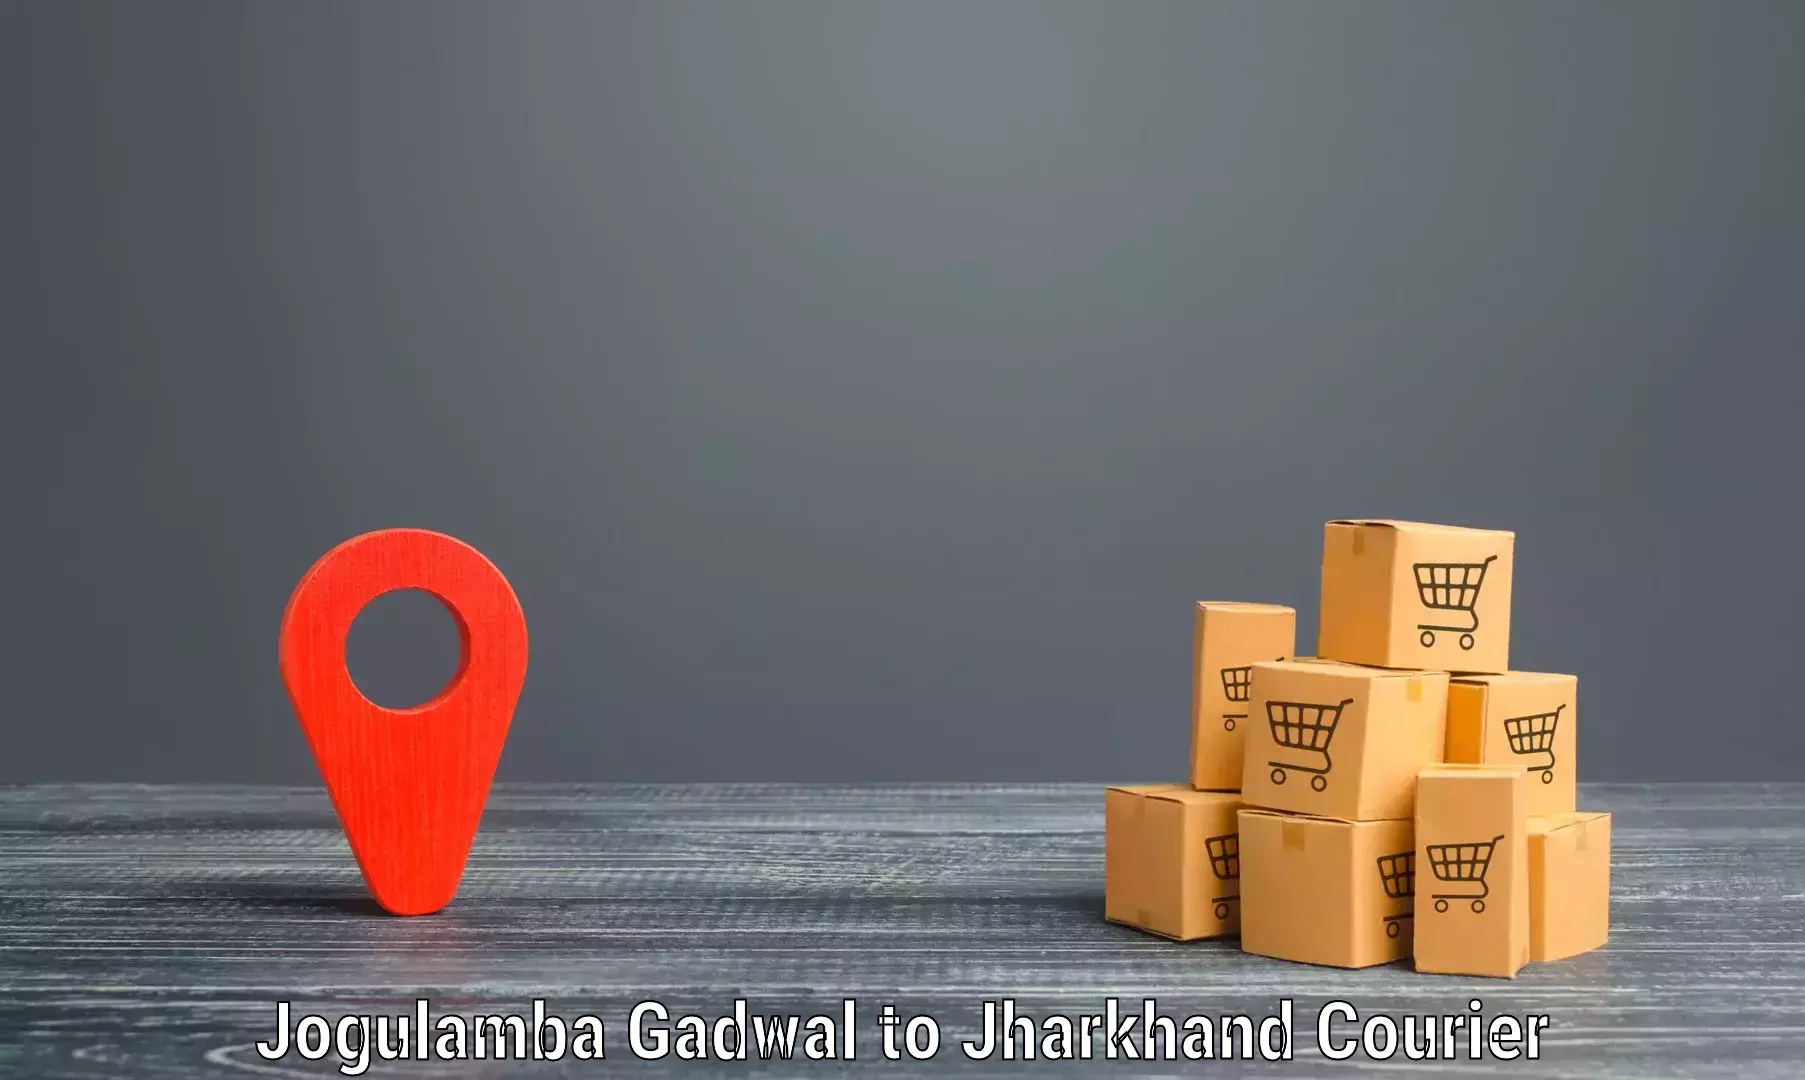 Easy return solutions Jogulamba Gadwal to Medininagar